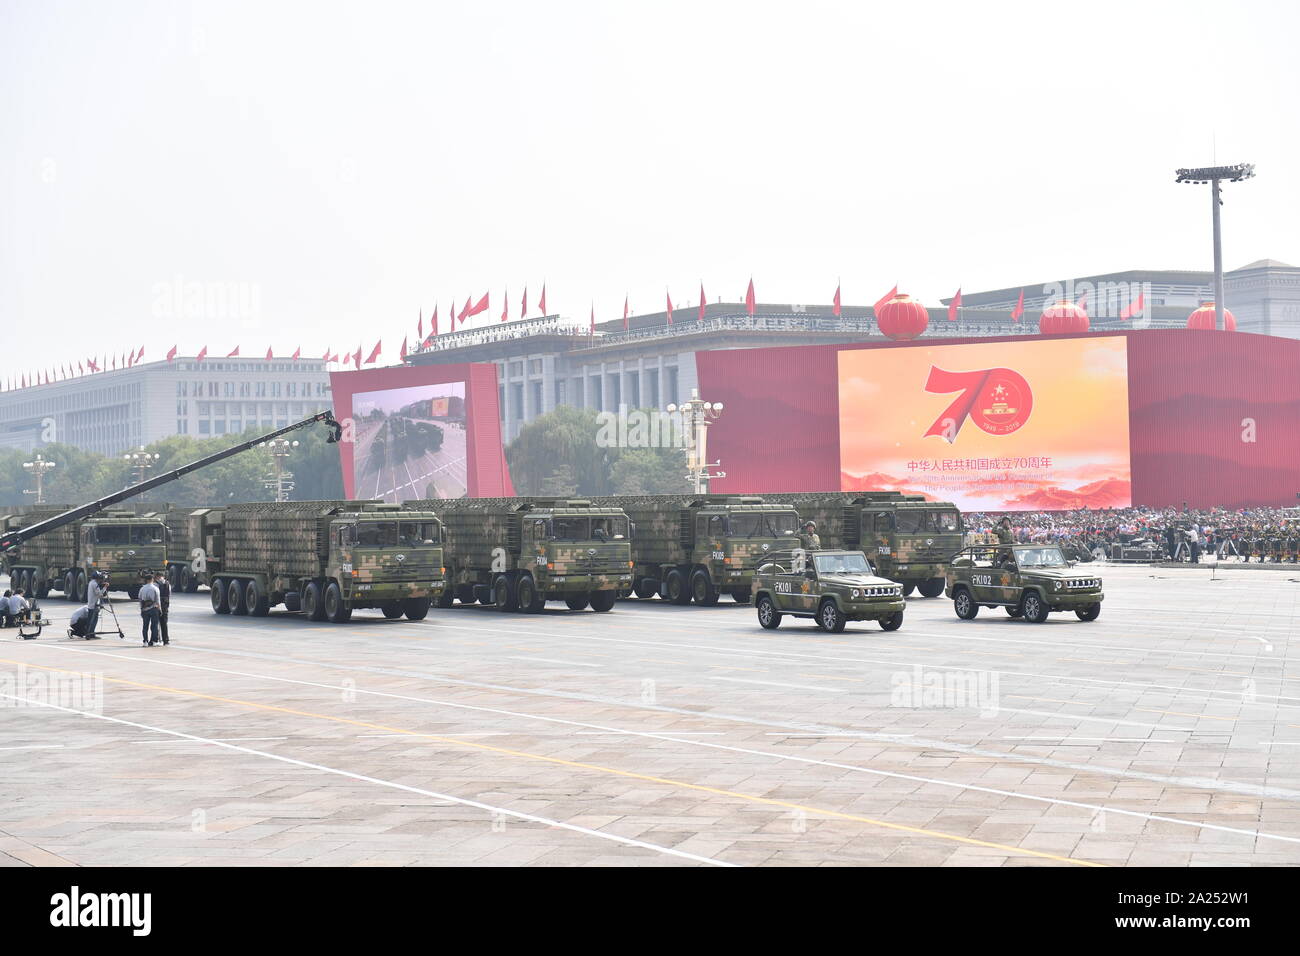 Beijing, Chine. 1 octobre, 2019. Une formation de radars d'alerte précoce prend part à un défilé militaire au cours des célébrations marquant le 70e anniversaire de la fondation de la République populaire de Chine (RPC) à la place Tian'anmen à Beijing, capitale de Chine, le 1er octobre 2019. Crédit : Li Ga/Xinhua/Alamy Live News Banque D'Images